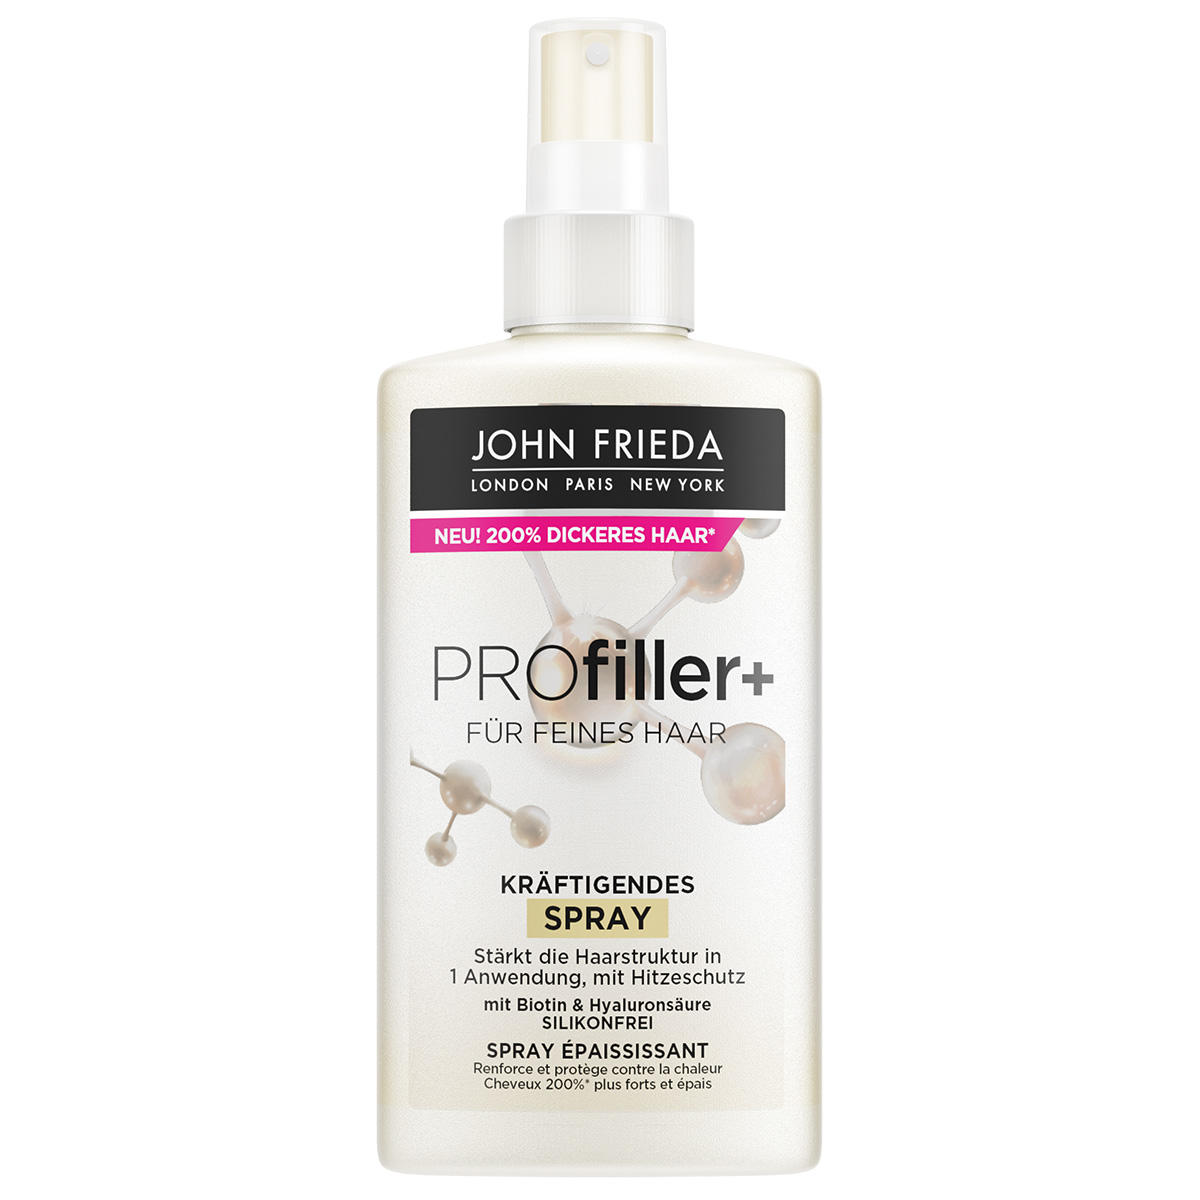 JOHN FRIEDA PROfiller+ Kräftigendes Spray 150 ml - 1